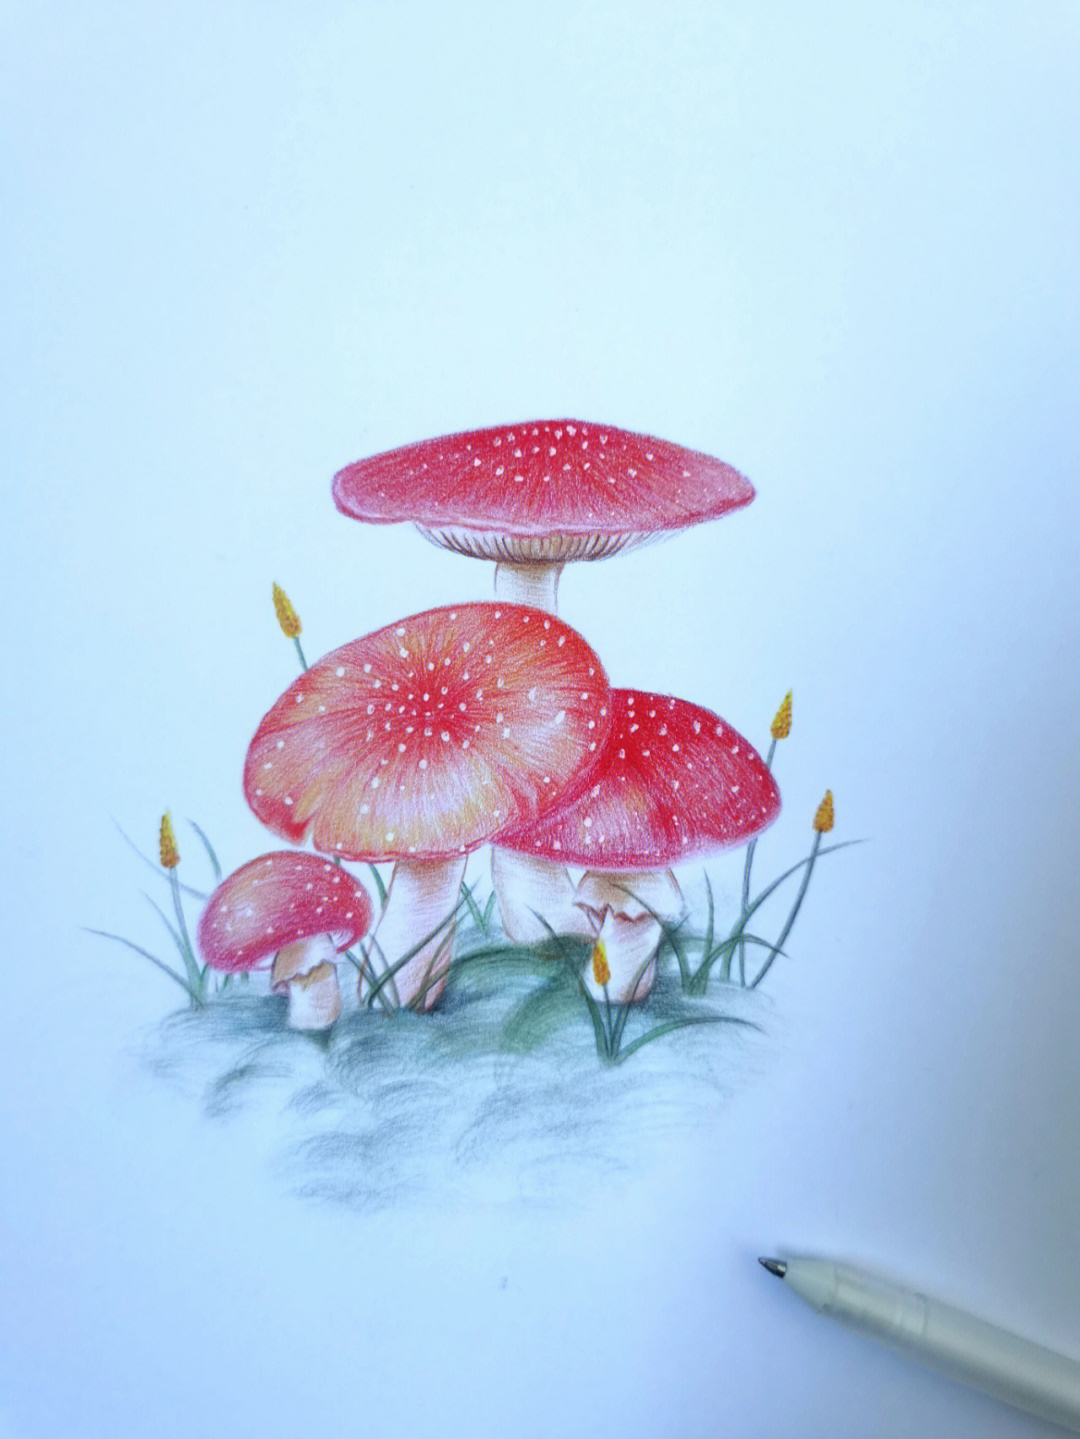 彩铅蘑菇